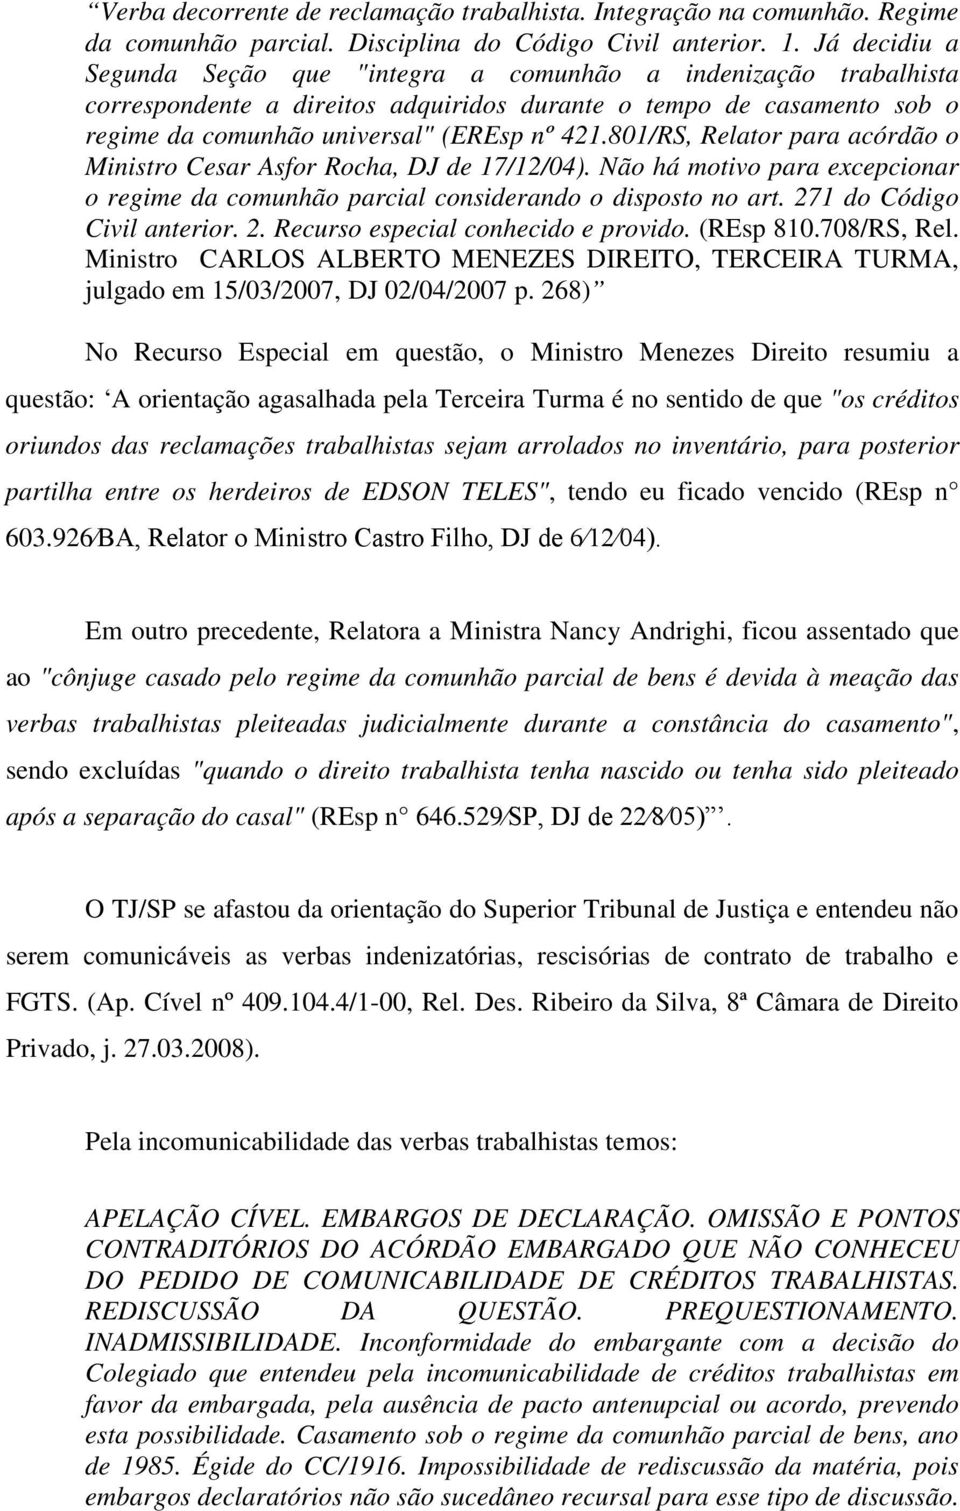 801/RS, Relator para acórdão o Ministro Cesar Asfor Rocha, DJ de 17/12/04). Não há motivo para excepcionar o regime da comunhão parcial considerando o disposto no art. 27